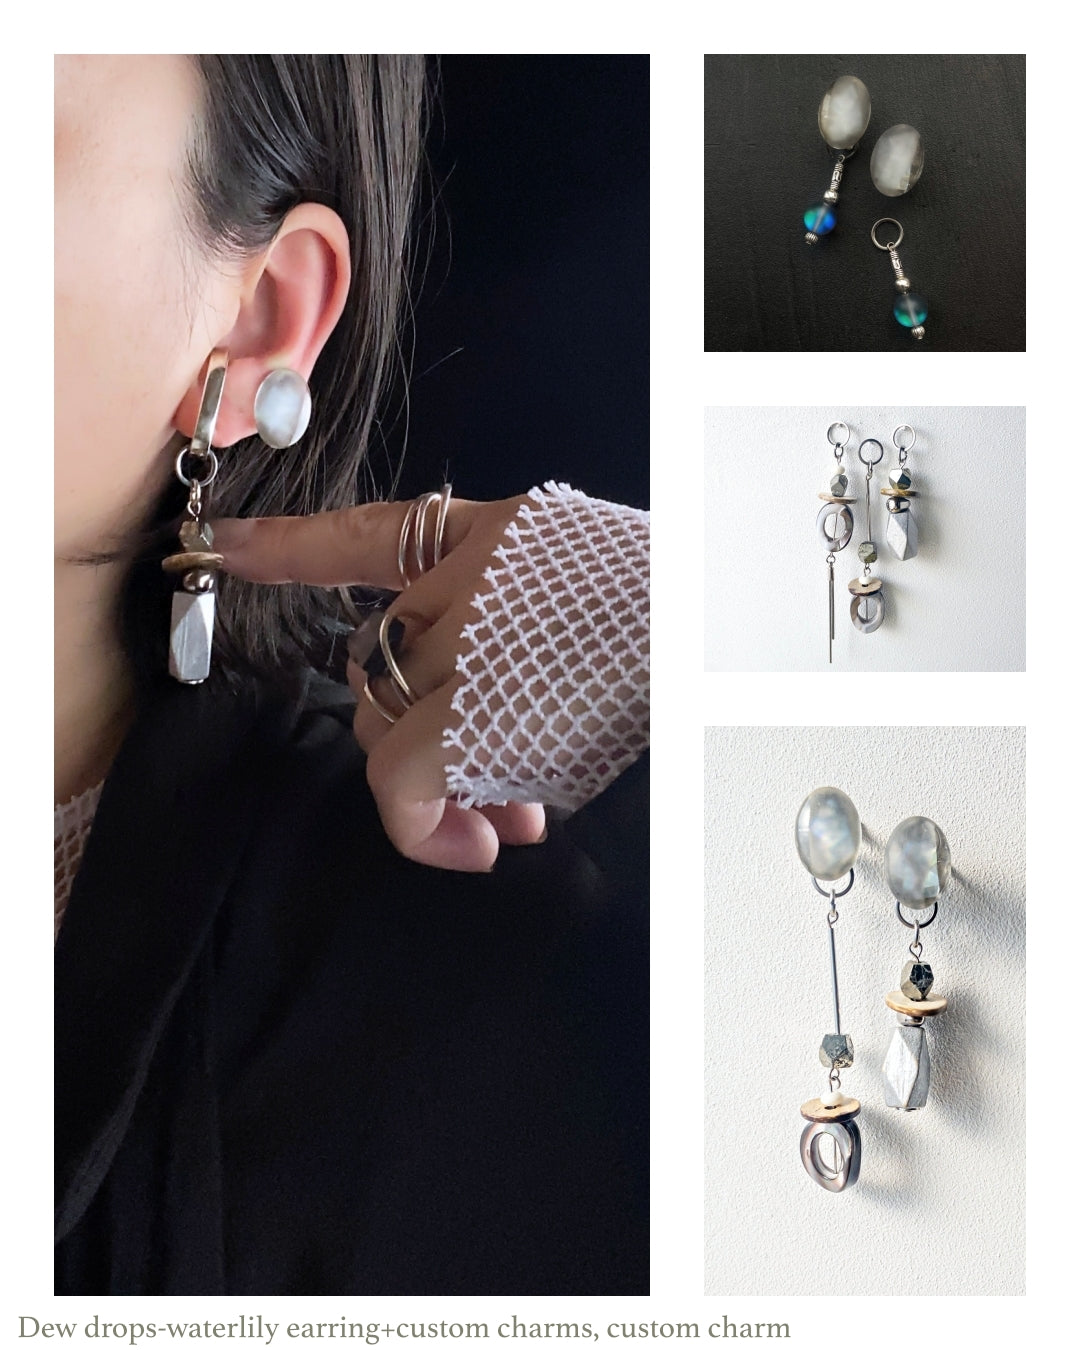 Dew drops-waterlily 2way earrings/Interchangeable/clear gray